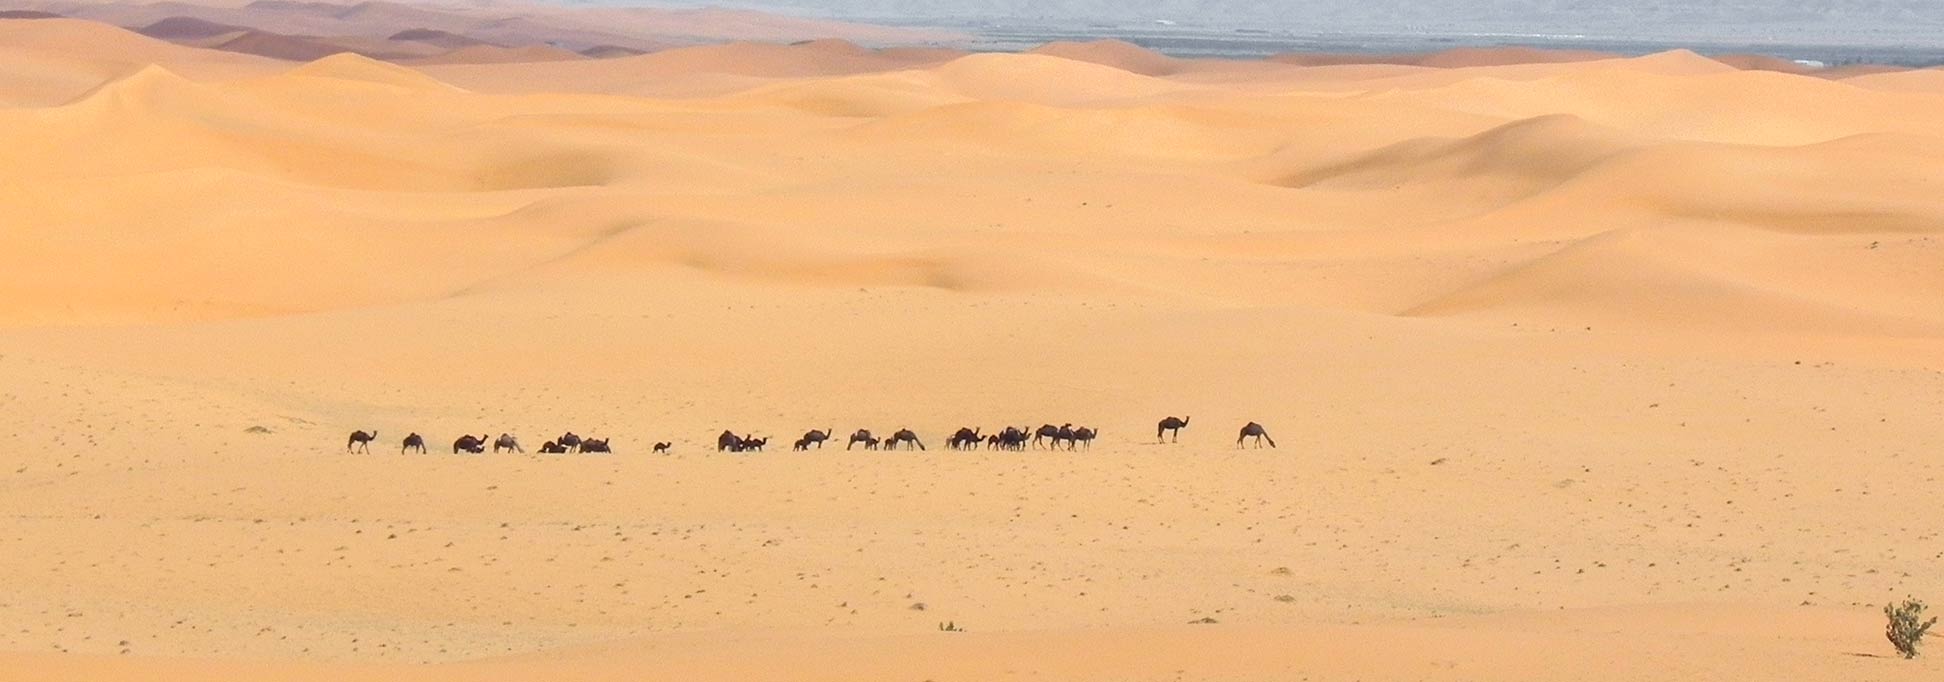 Desert landscape near the Saudi capital of Riyadh